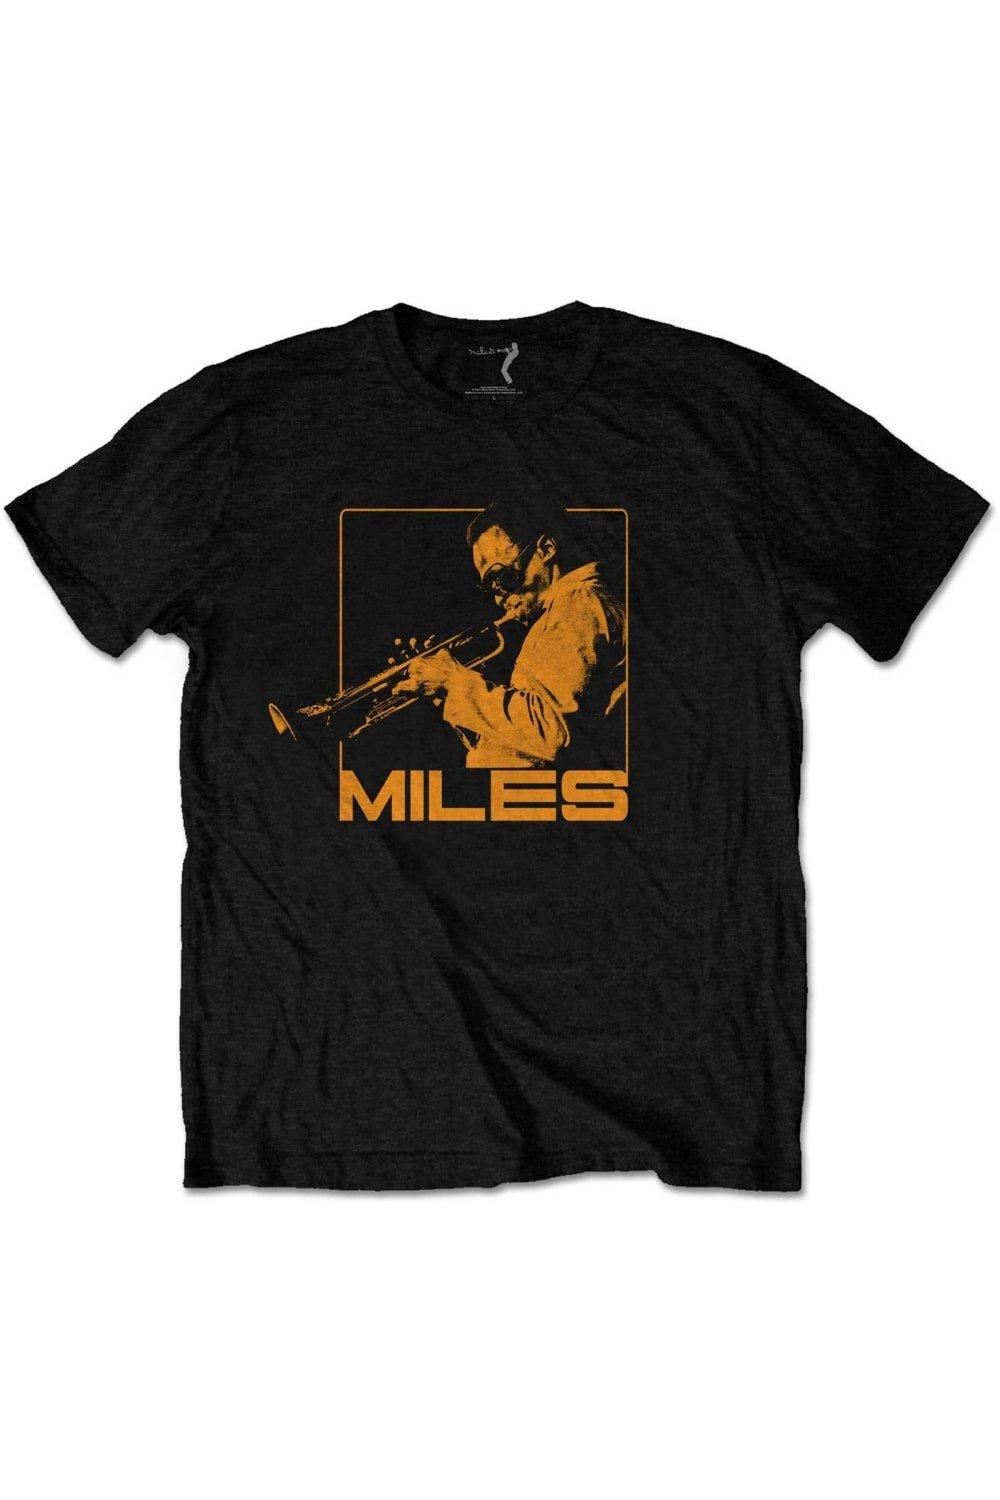 Хлопковая футболка Blowin´ Miles Davis, черный вид синей футболки miles davis черный